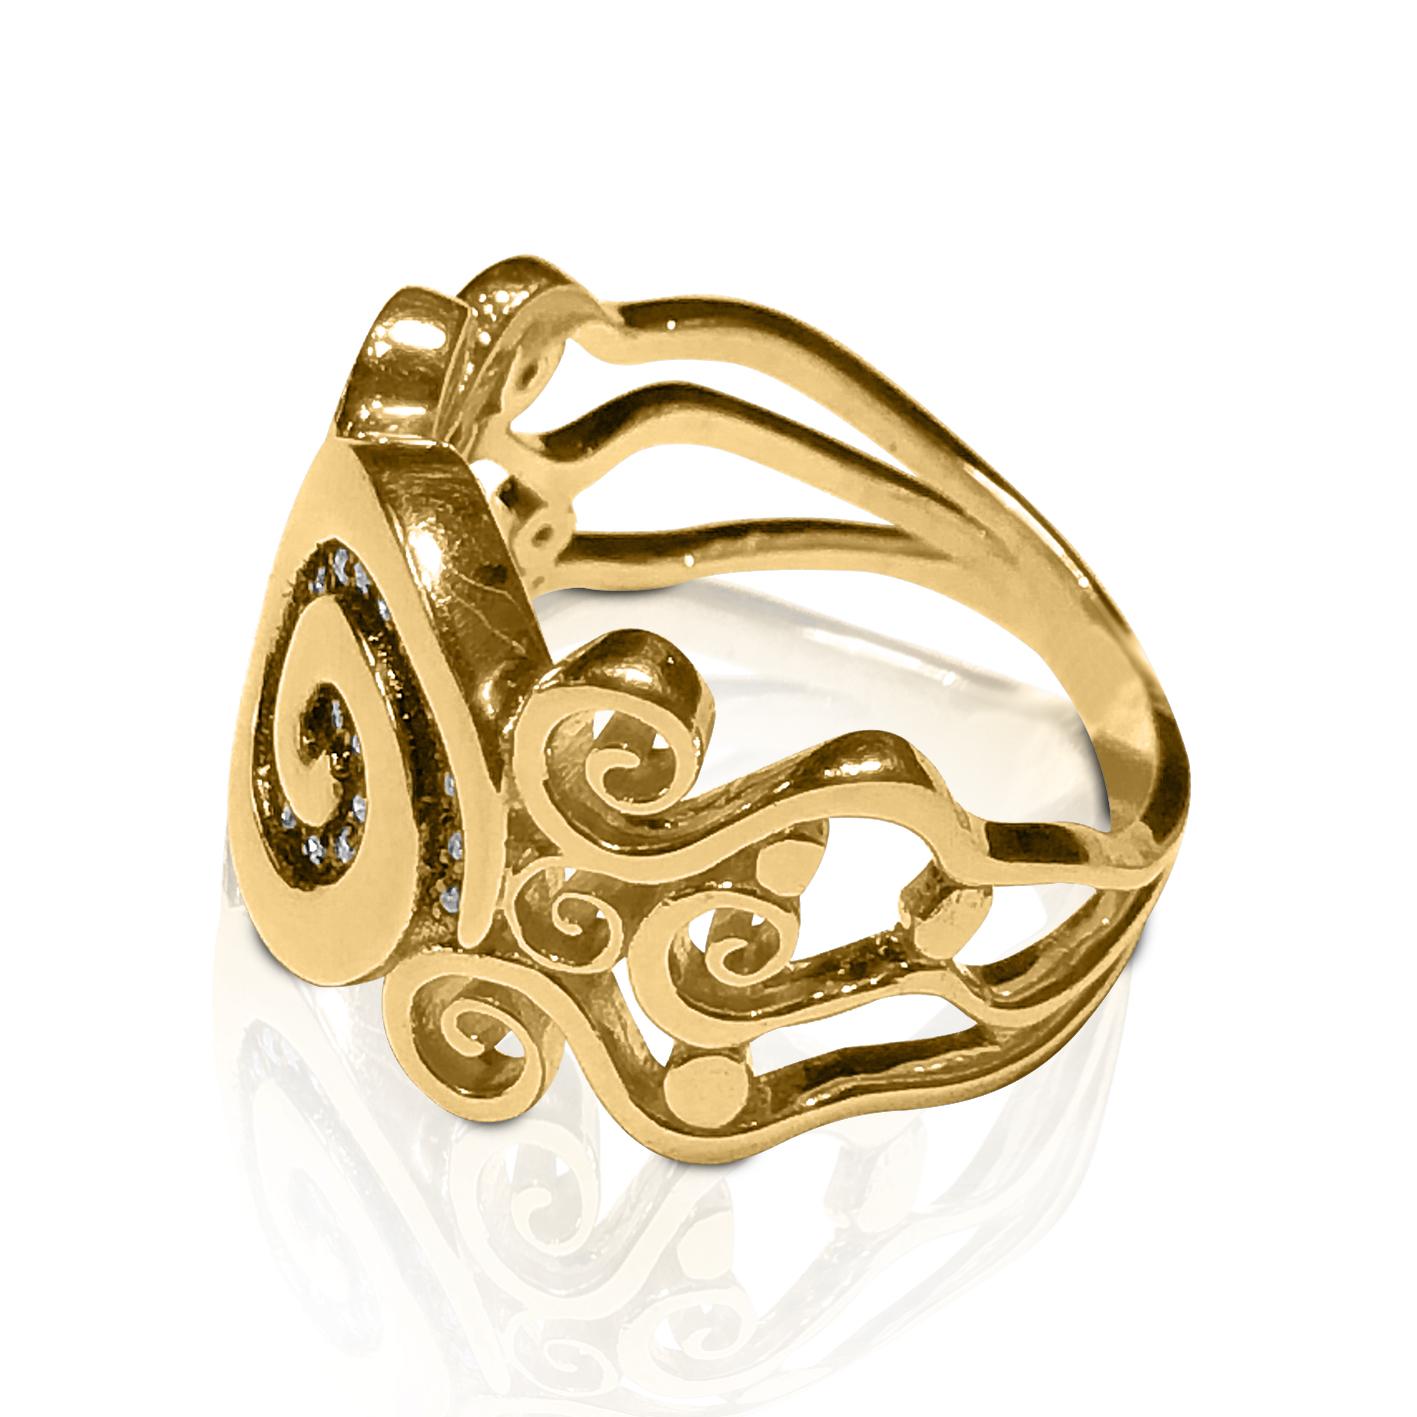 S. Georgios Bague en or jaune 18 carats faite à la main et ornée de diamants avec le motif de la clé grecque qui symbolise l'éternité. Ce motif est connu comme le symbole d'une longue vie et est l'un des motifs les plus classiques au monde.
Cette